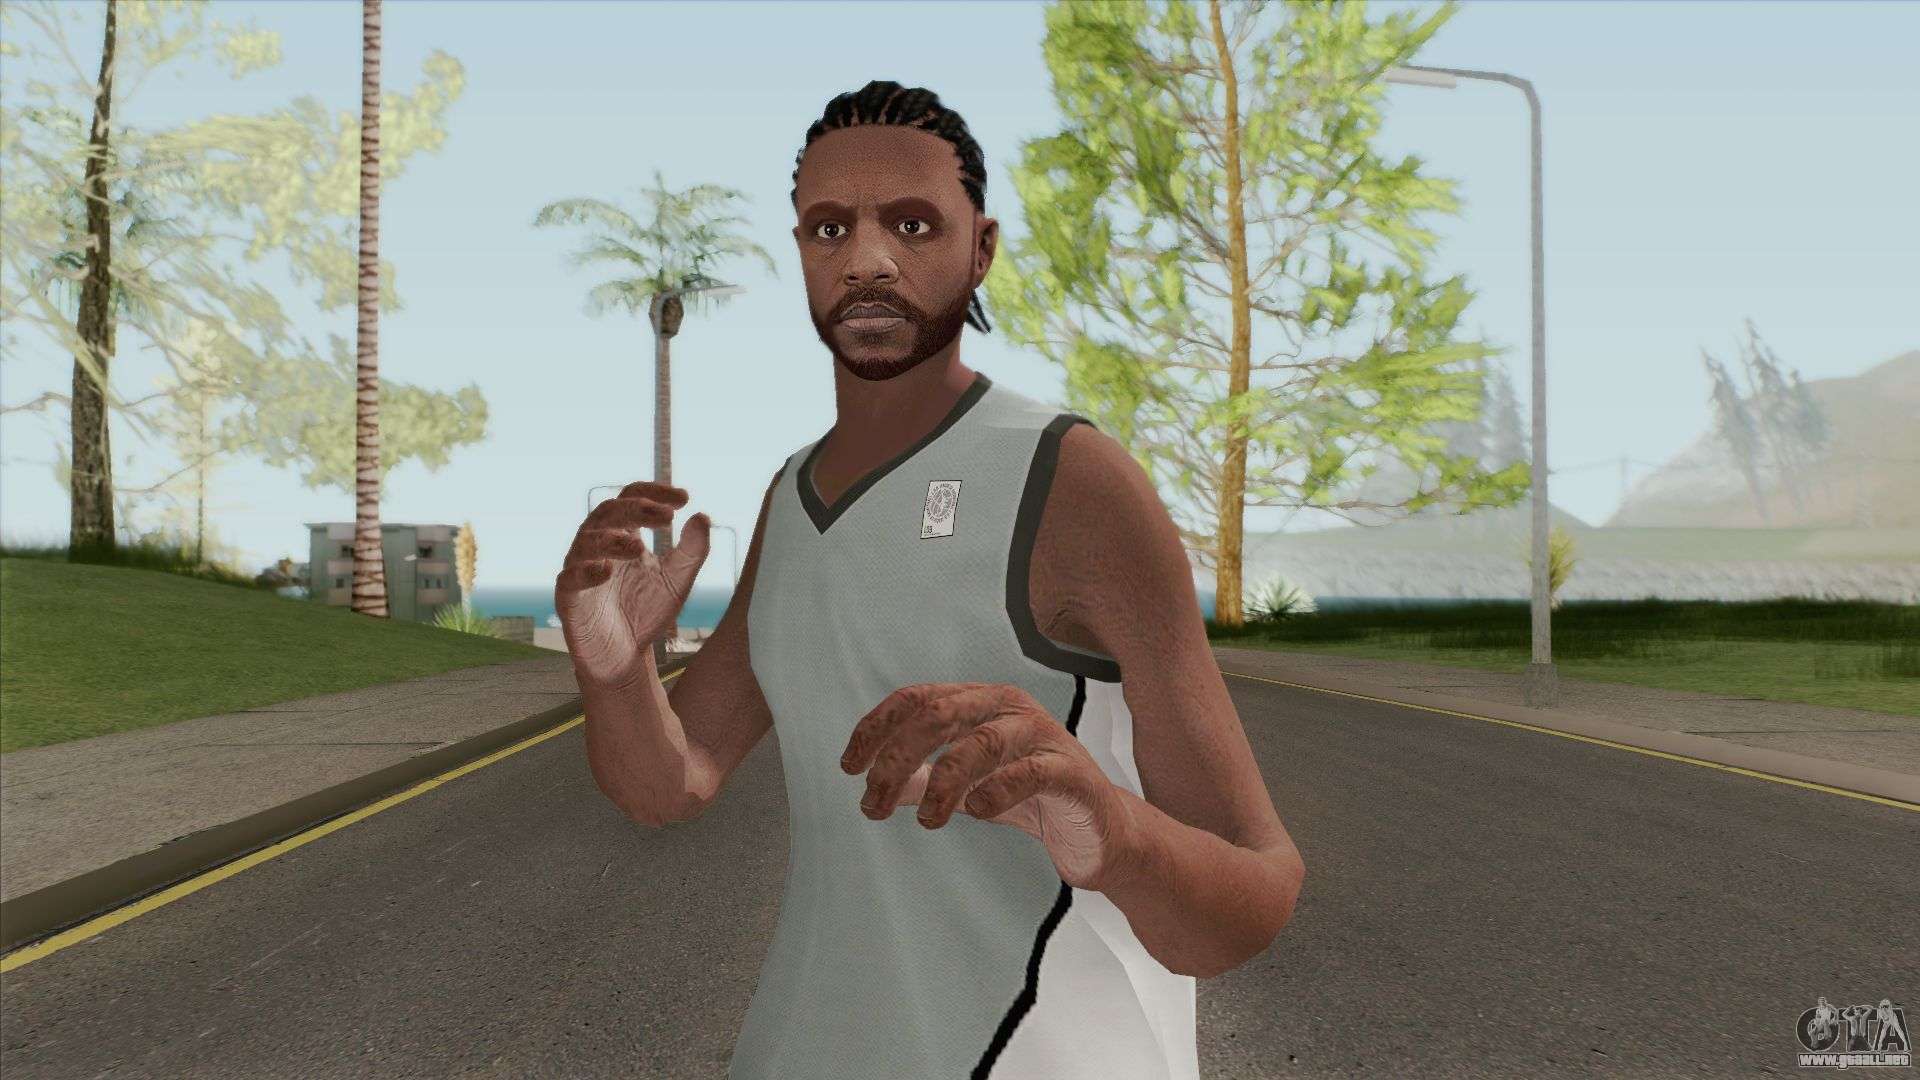 Basketball Player para GTA San Andreas